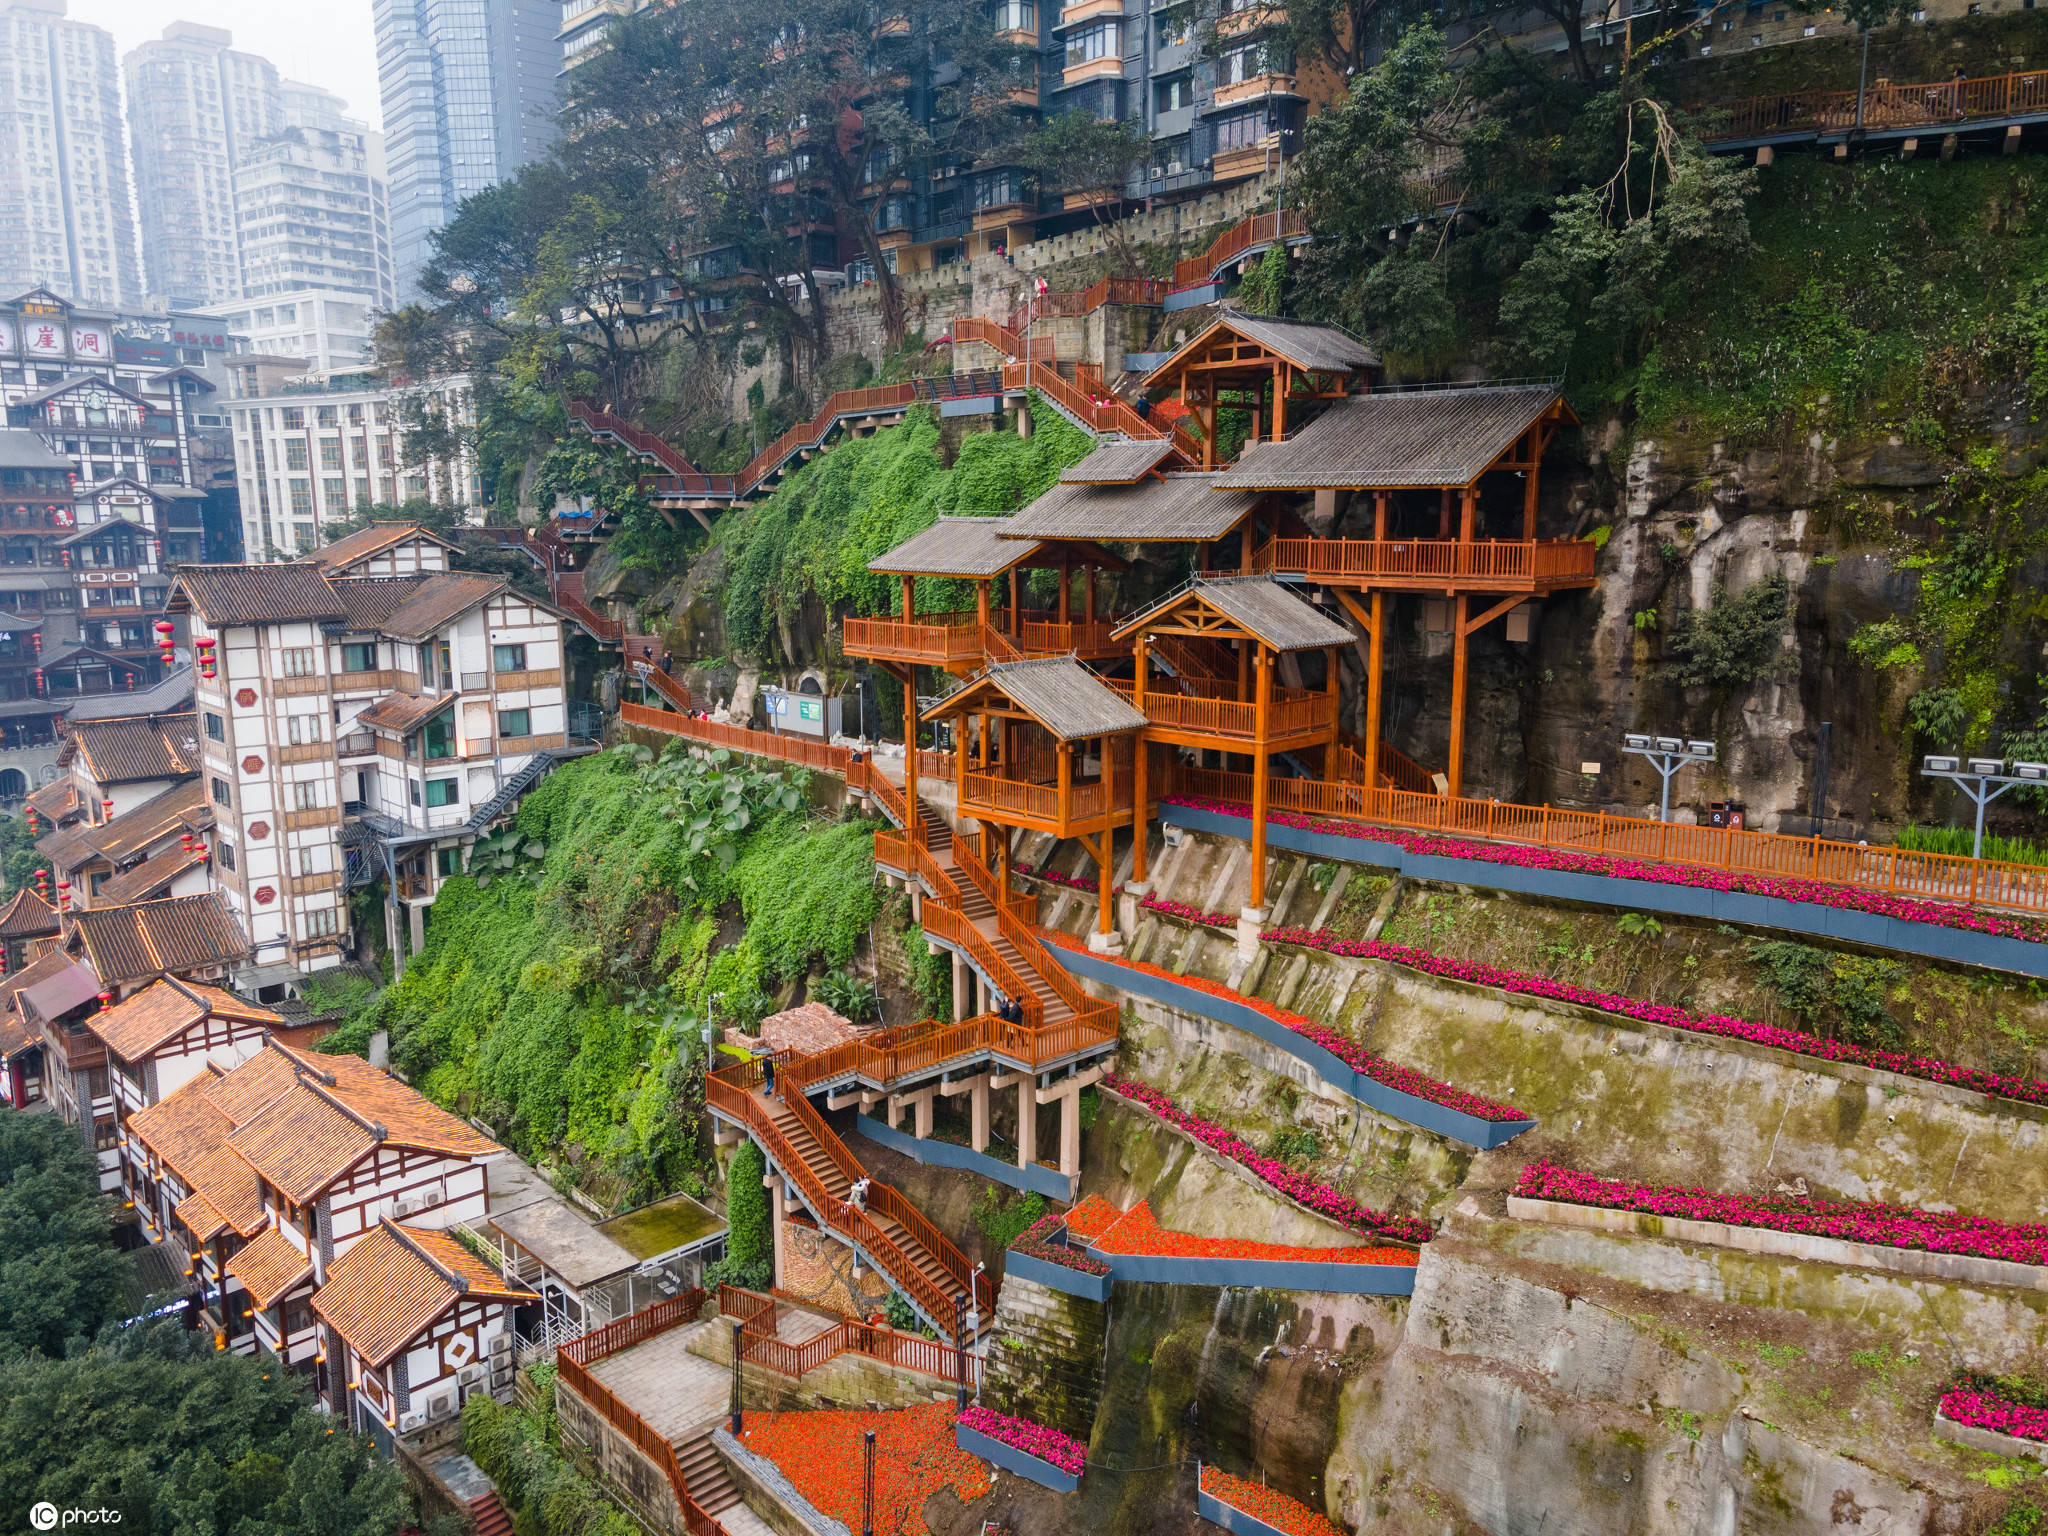 重庆一公园步道建在崖壁上 洪崖洞旁又多一处打卡地